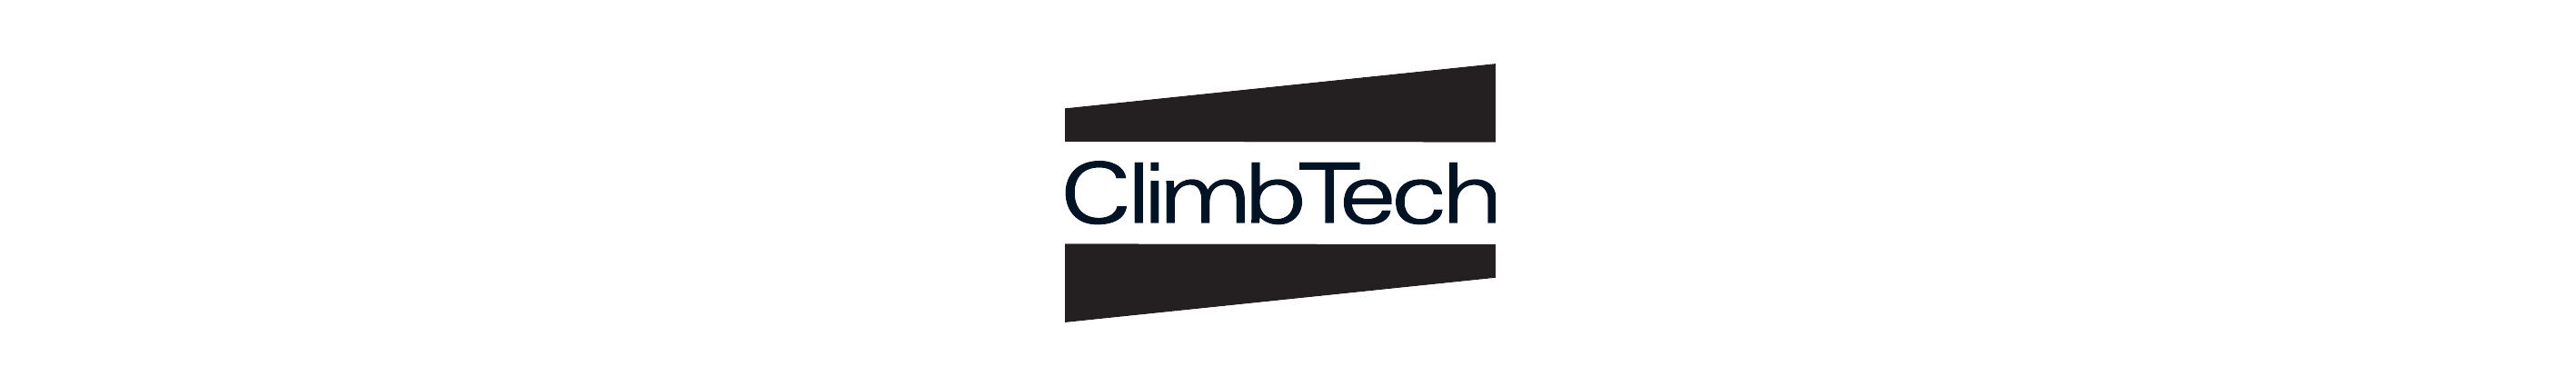 Climbtech | Höhenarbeit |Toprope Shop